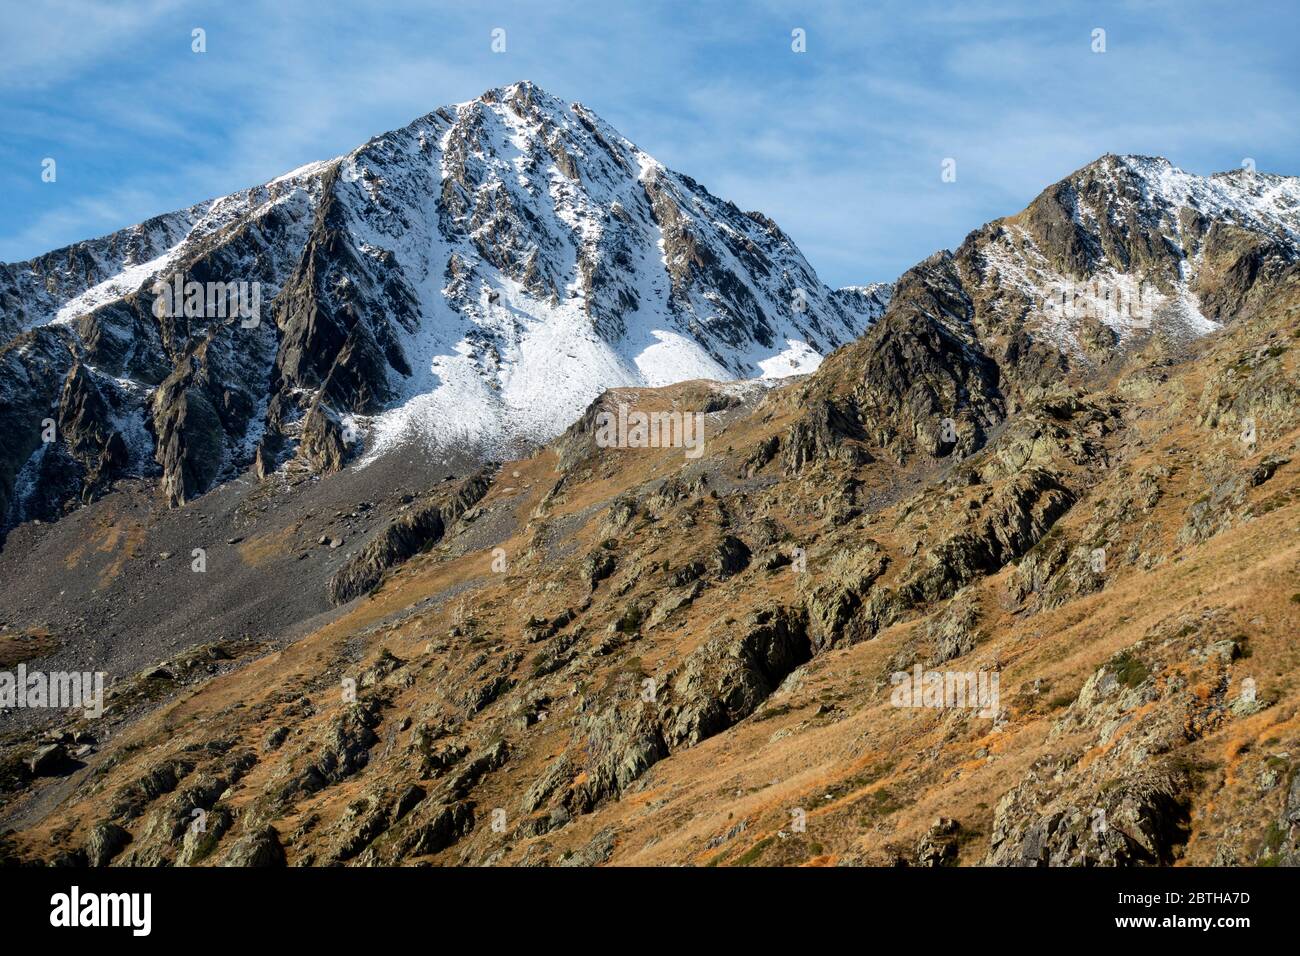 Comapedrosa peak (2942m).Highest peak in Andorra. Stock Photo